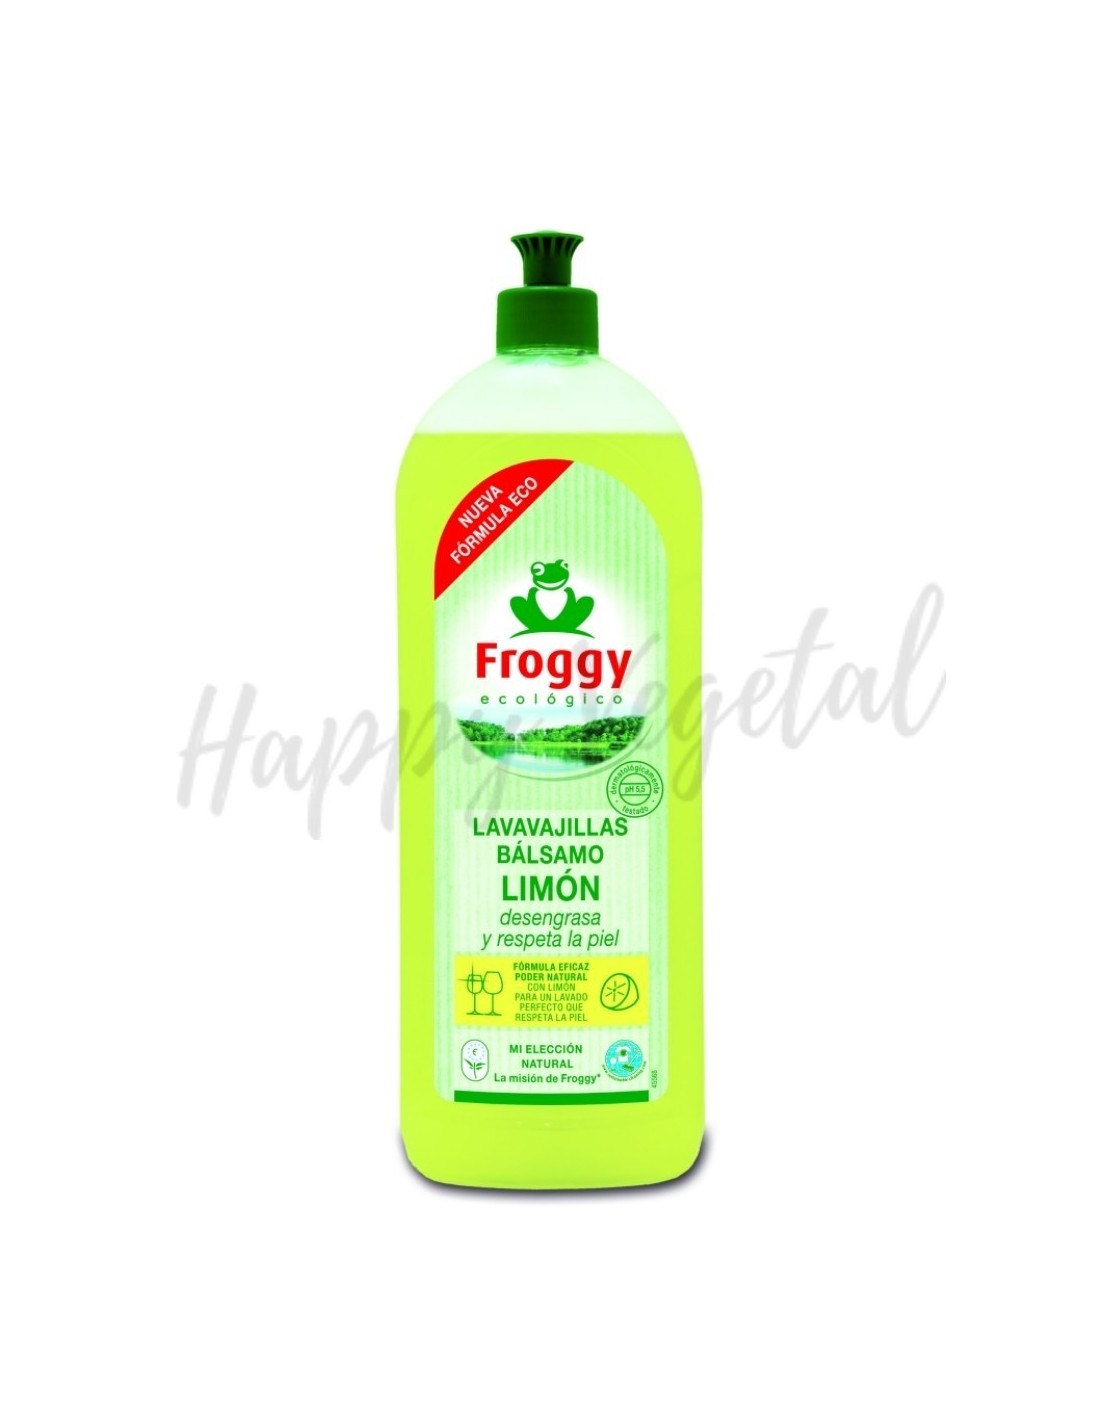 Frosch Detergente Lavavajillas Bálsamo - Granada, 500 ml - Ecosplendo  Tienda Online España